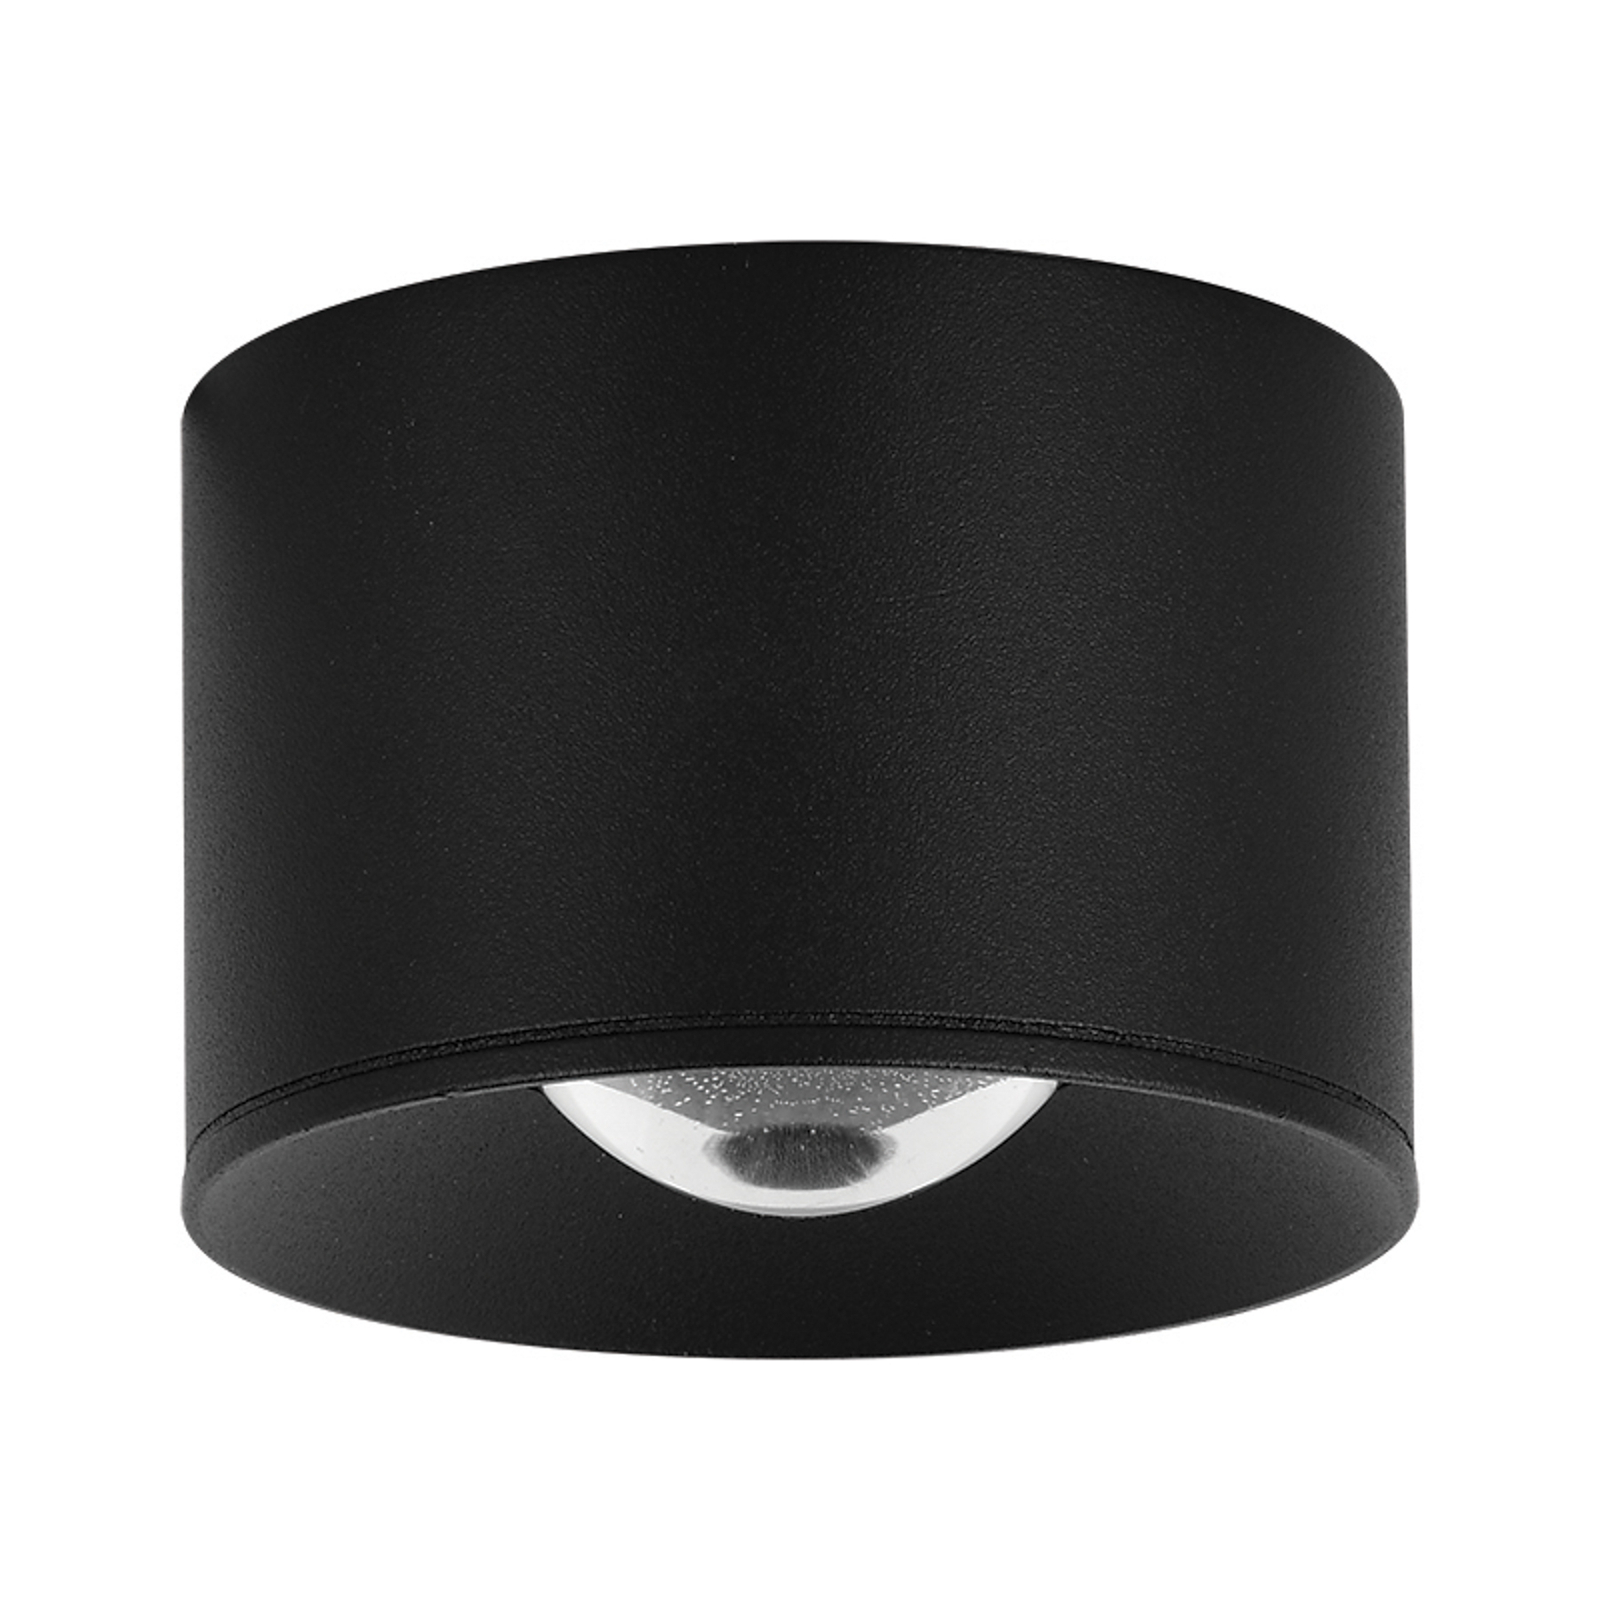 LED utendørs takspotlight S131, Ø 8 cm, sand svart